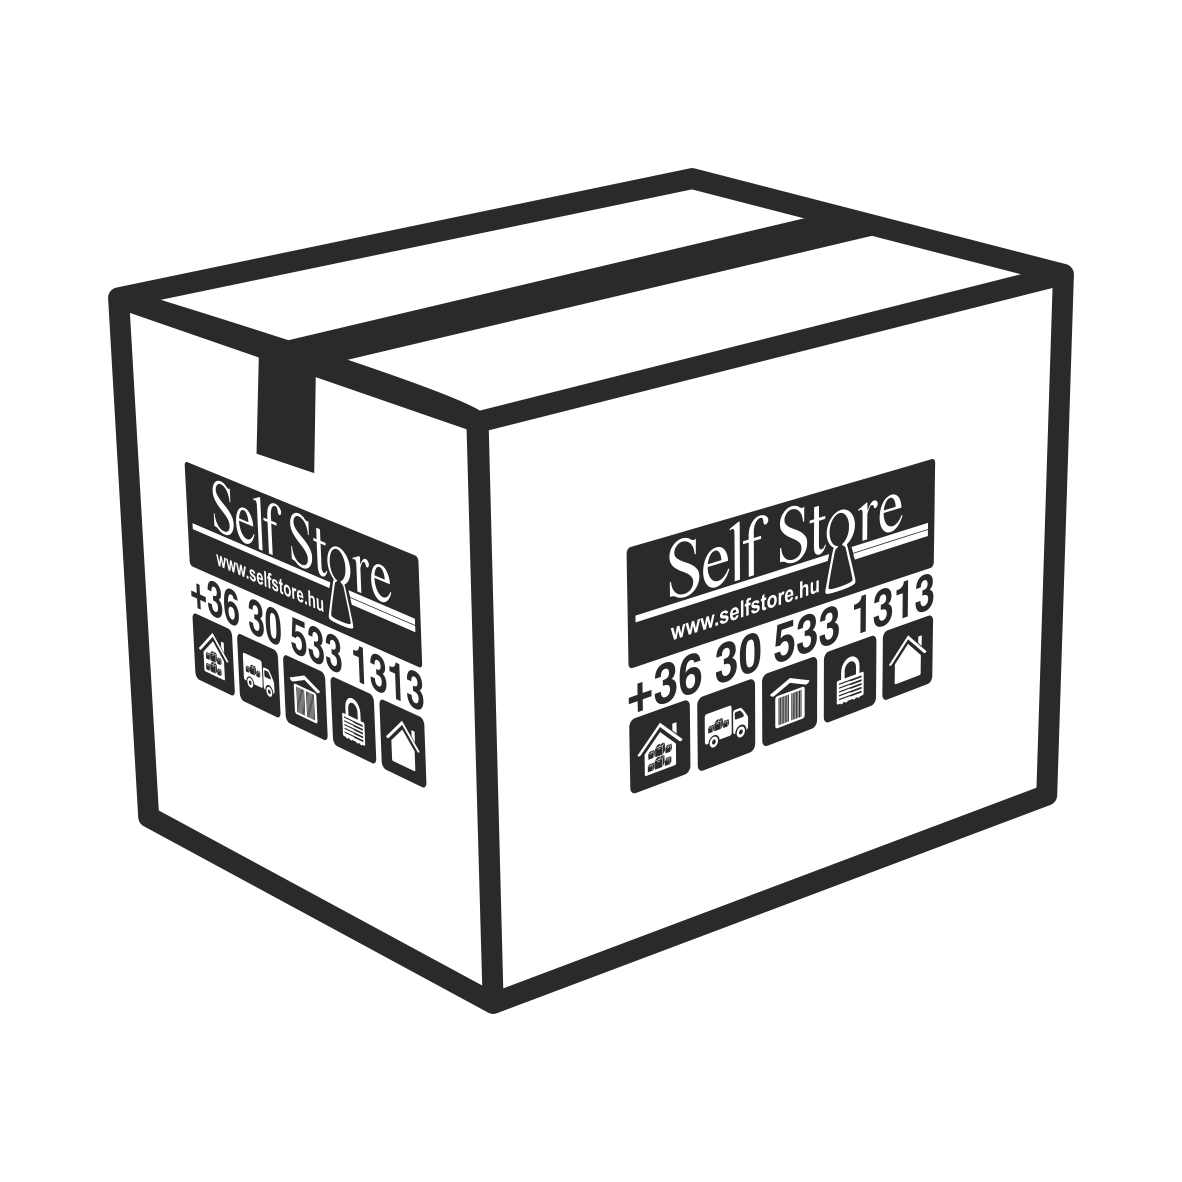 Karton költöztetődoboz - nagy méretű - költözéshez, csomagoláshoz | © Self Store